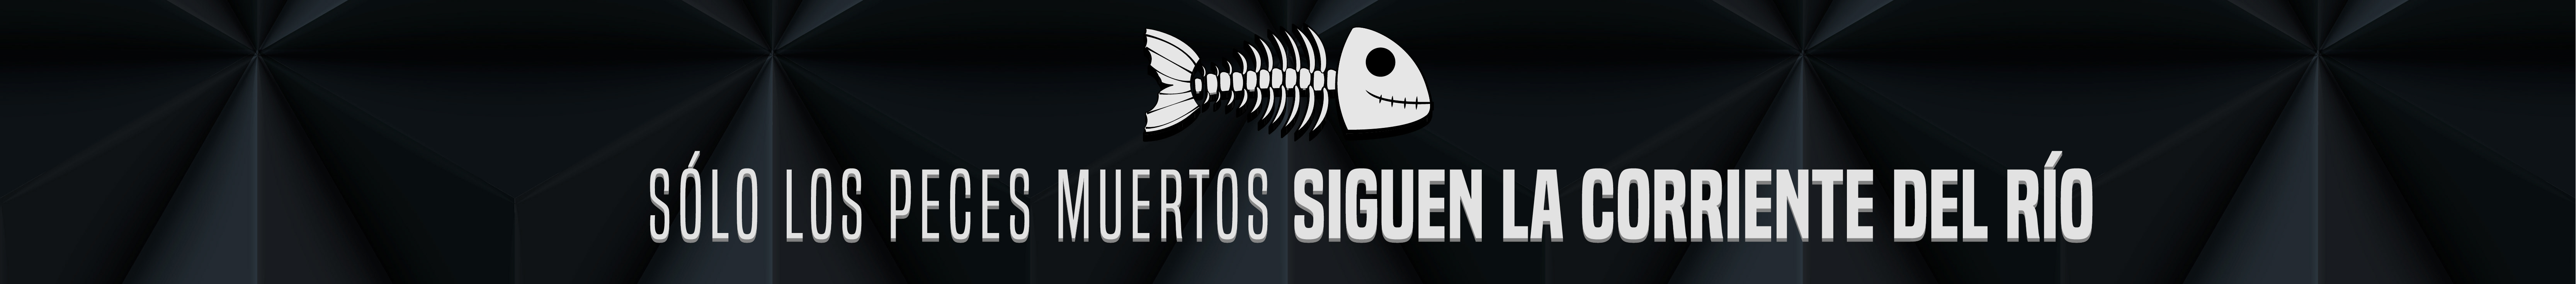 Jorge Lopez's profile banner